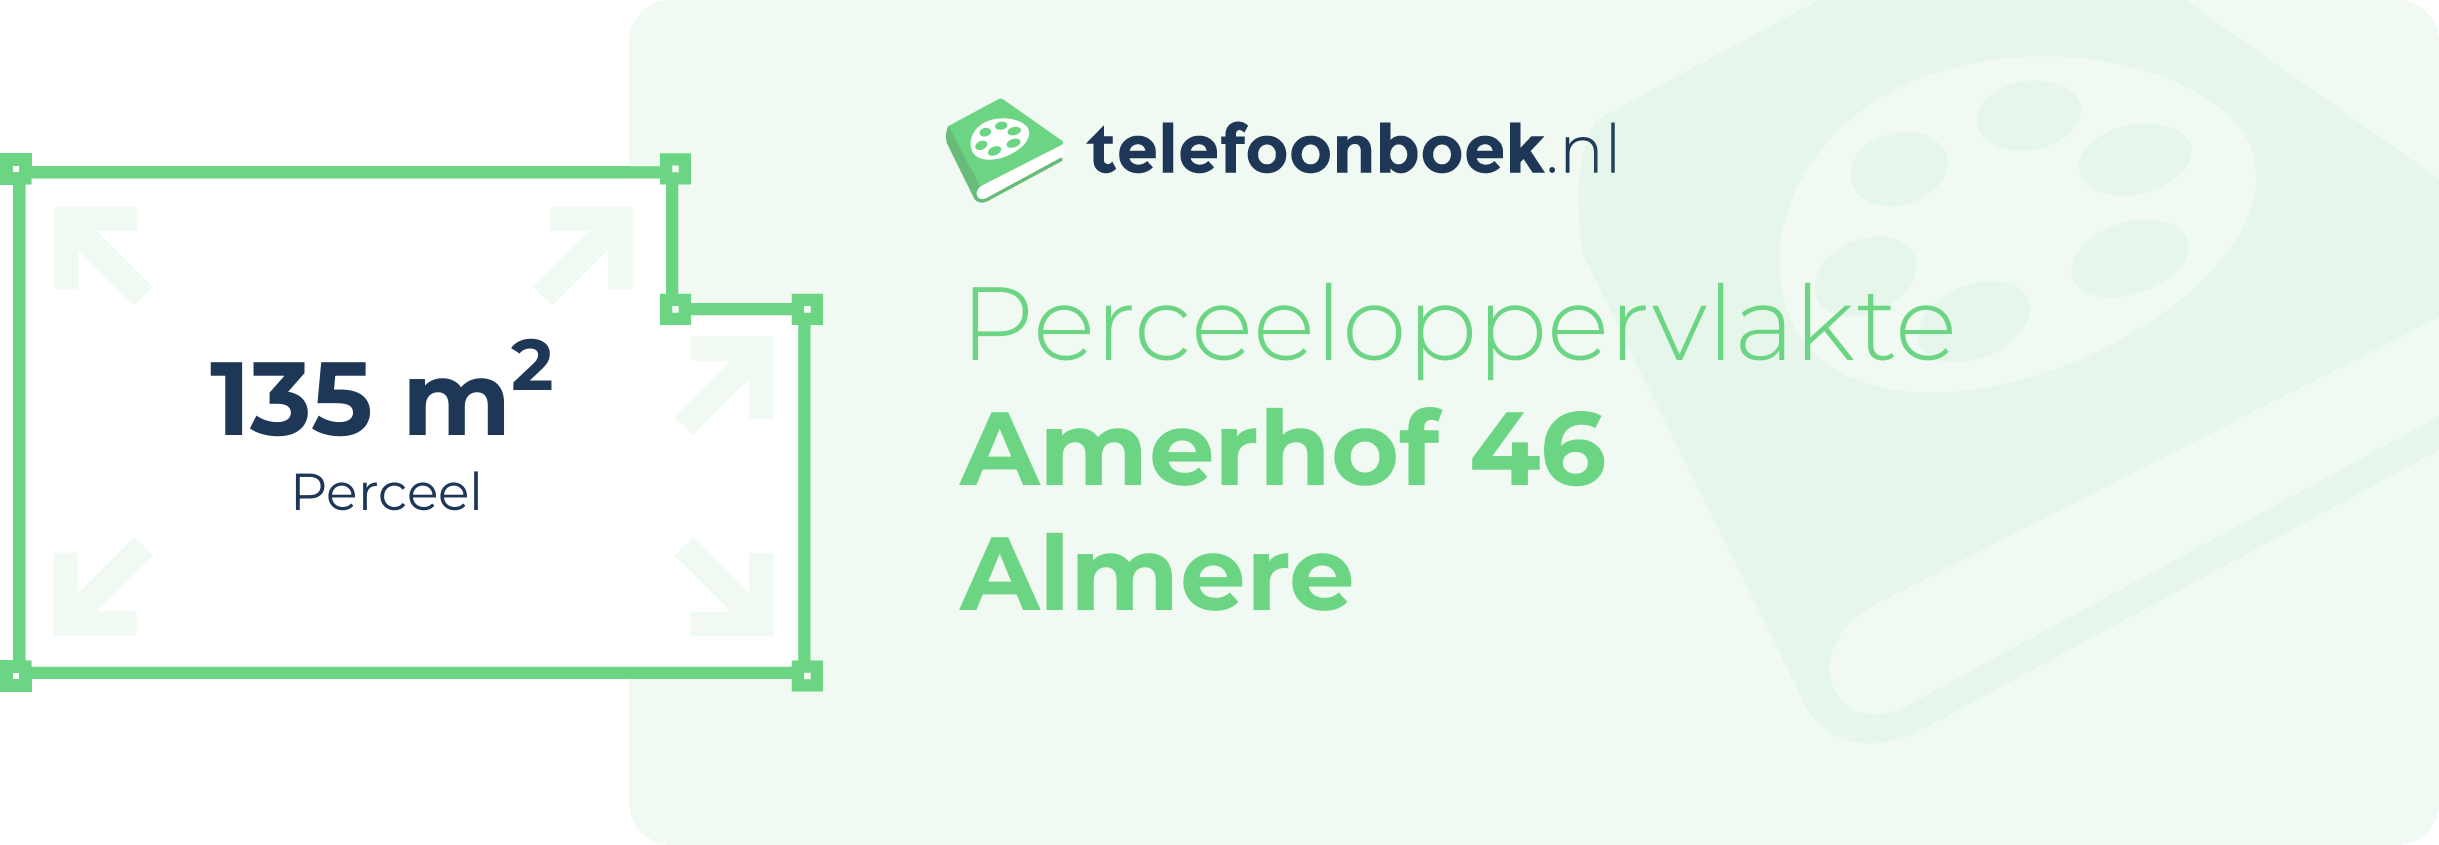 Perceeloppervlakte Amerhof 46 Almere